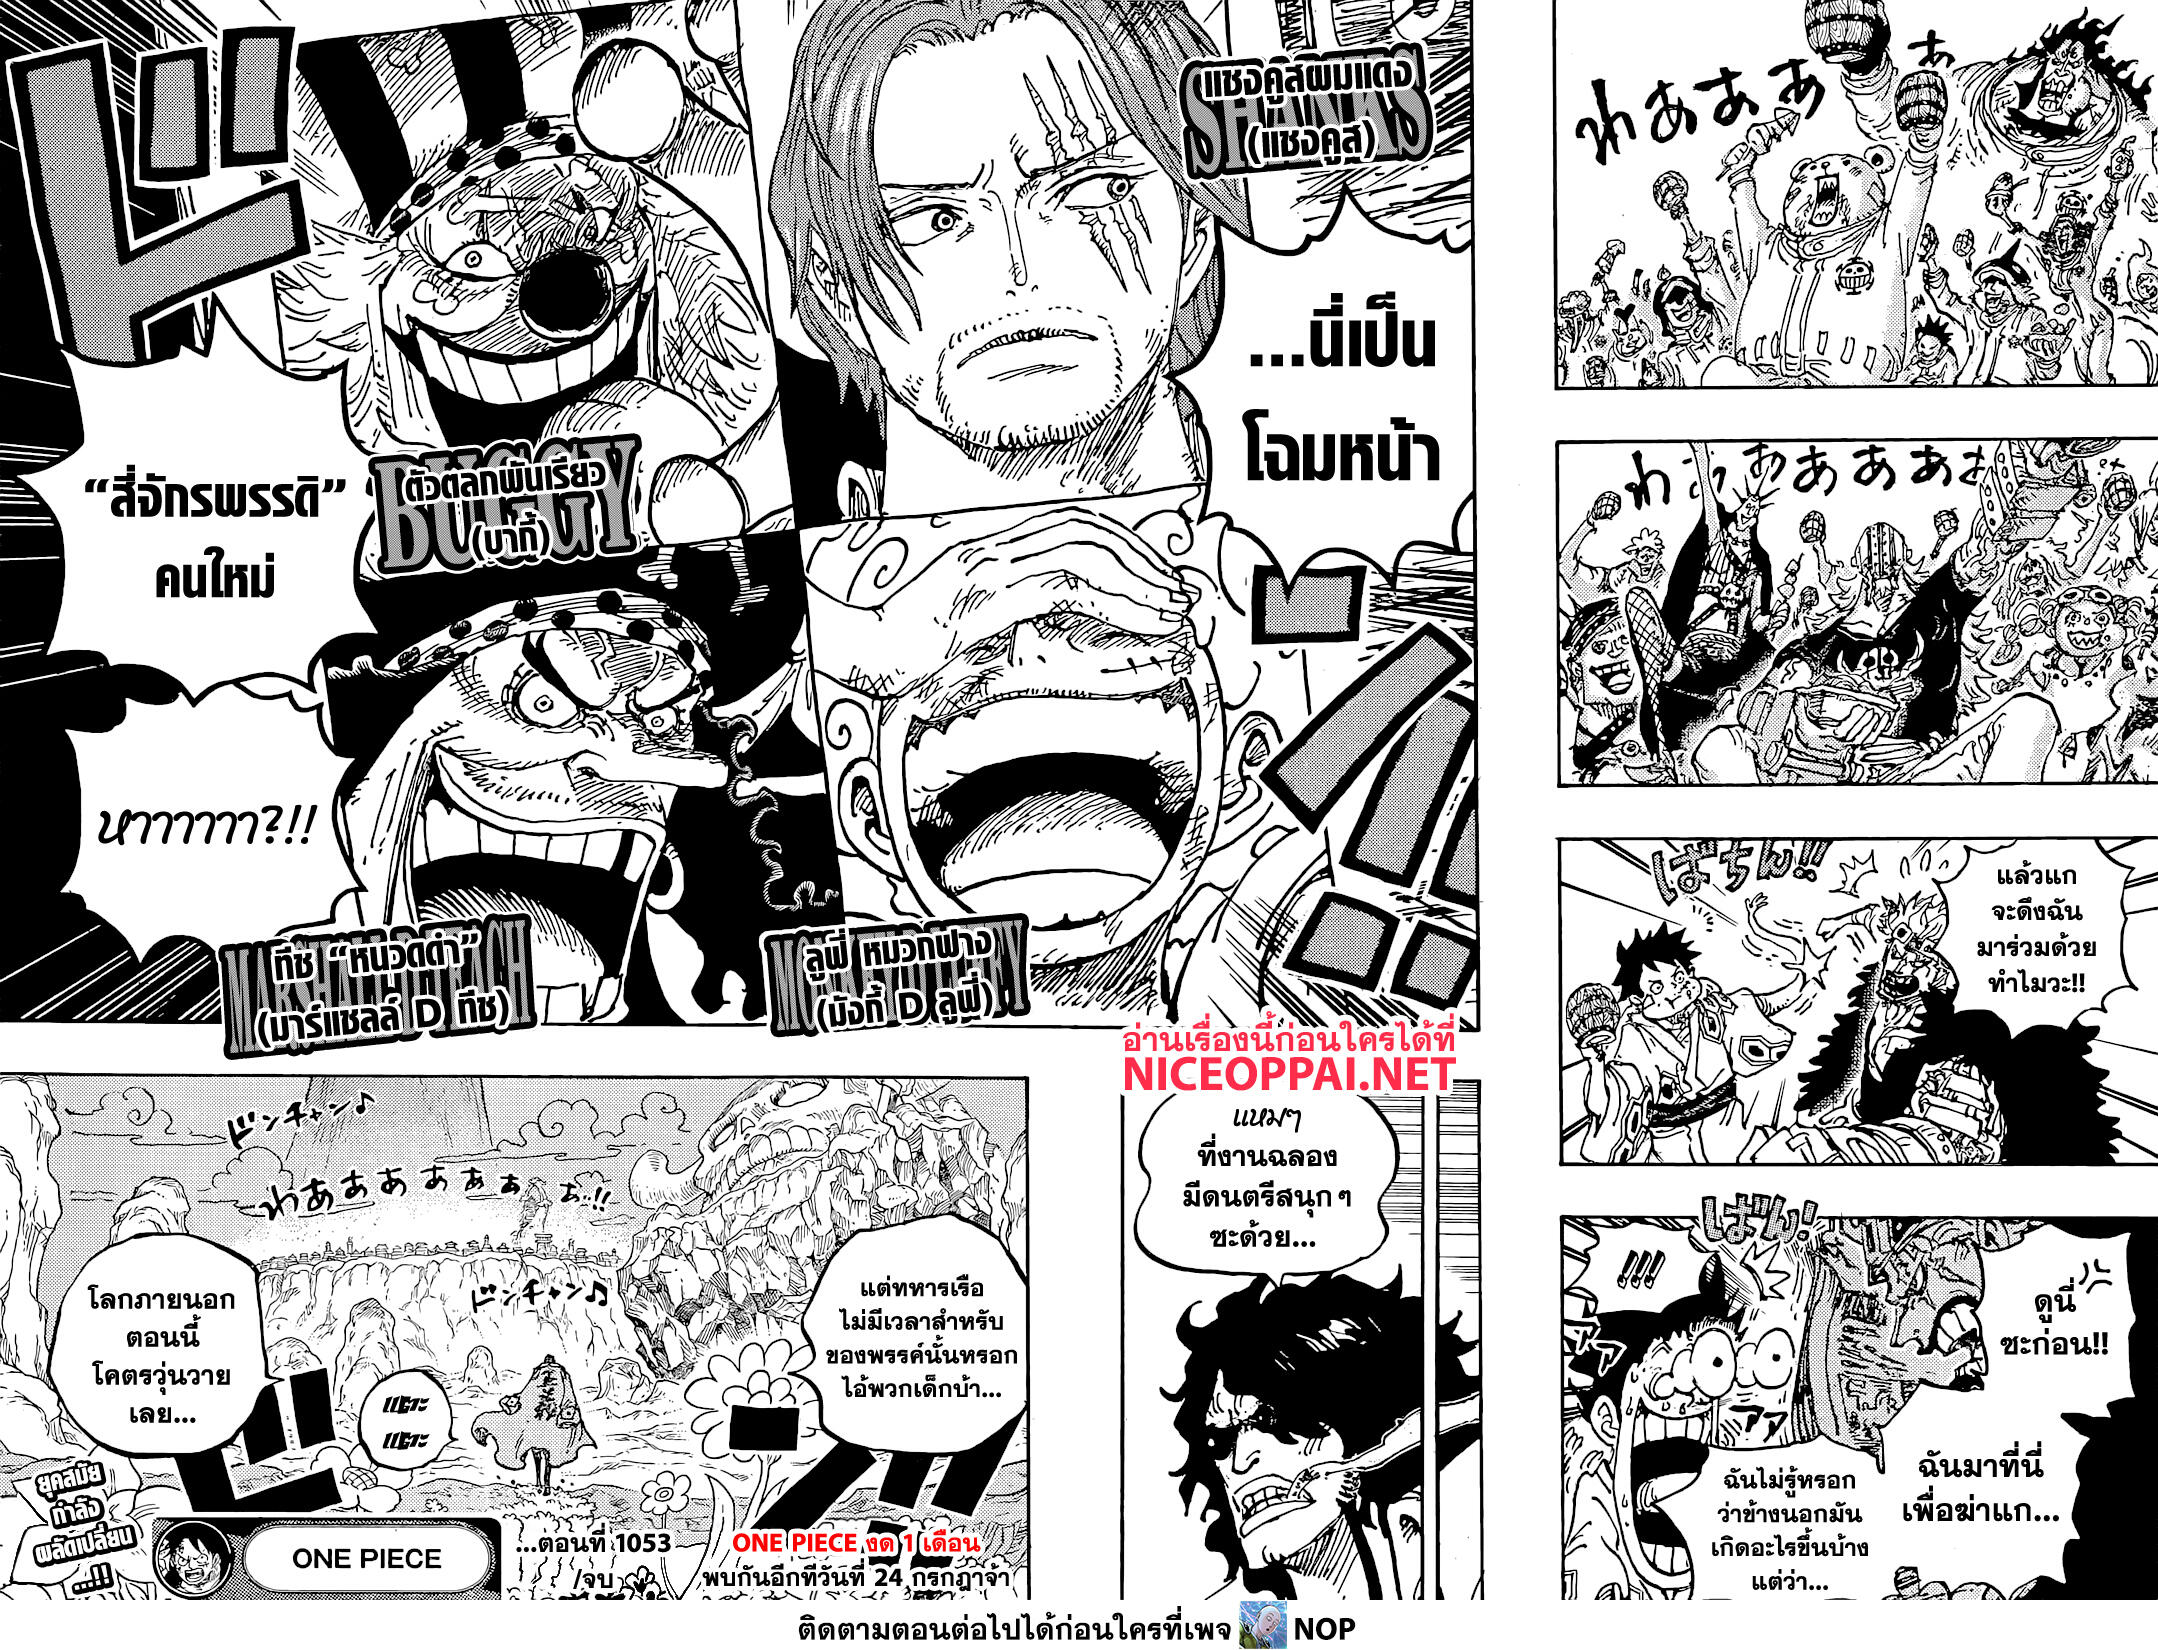 One Piece 1053-เหล่าจักรพรรดิคนใหม่